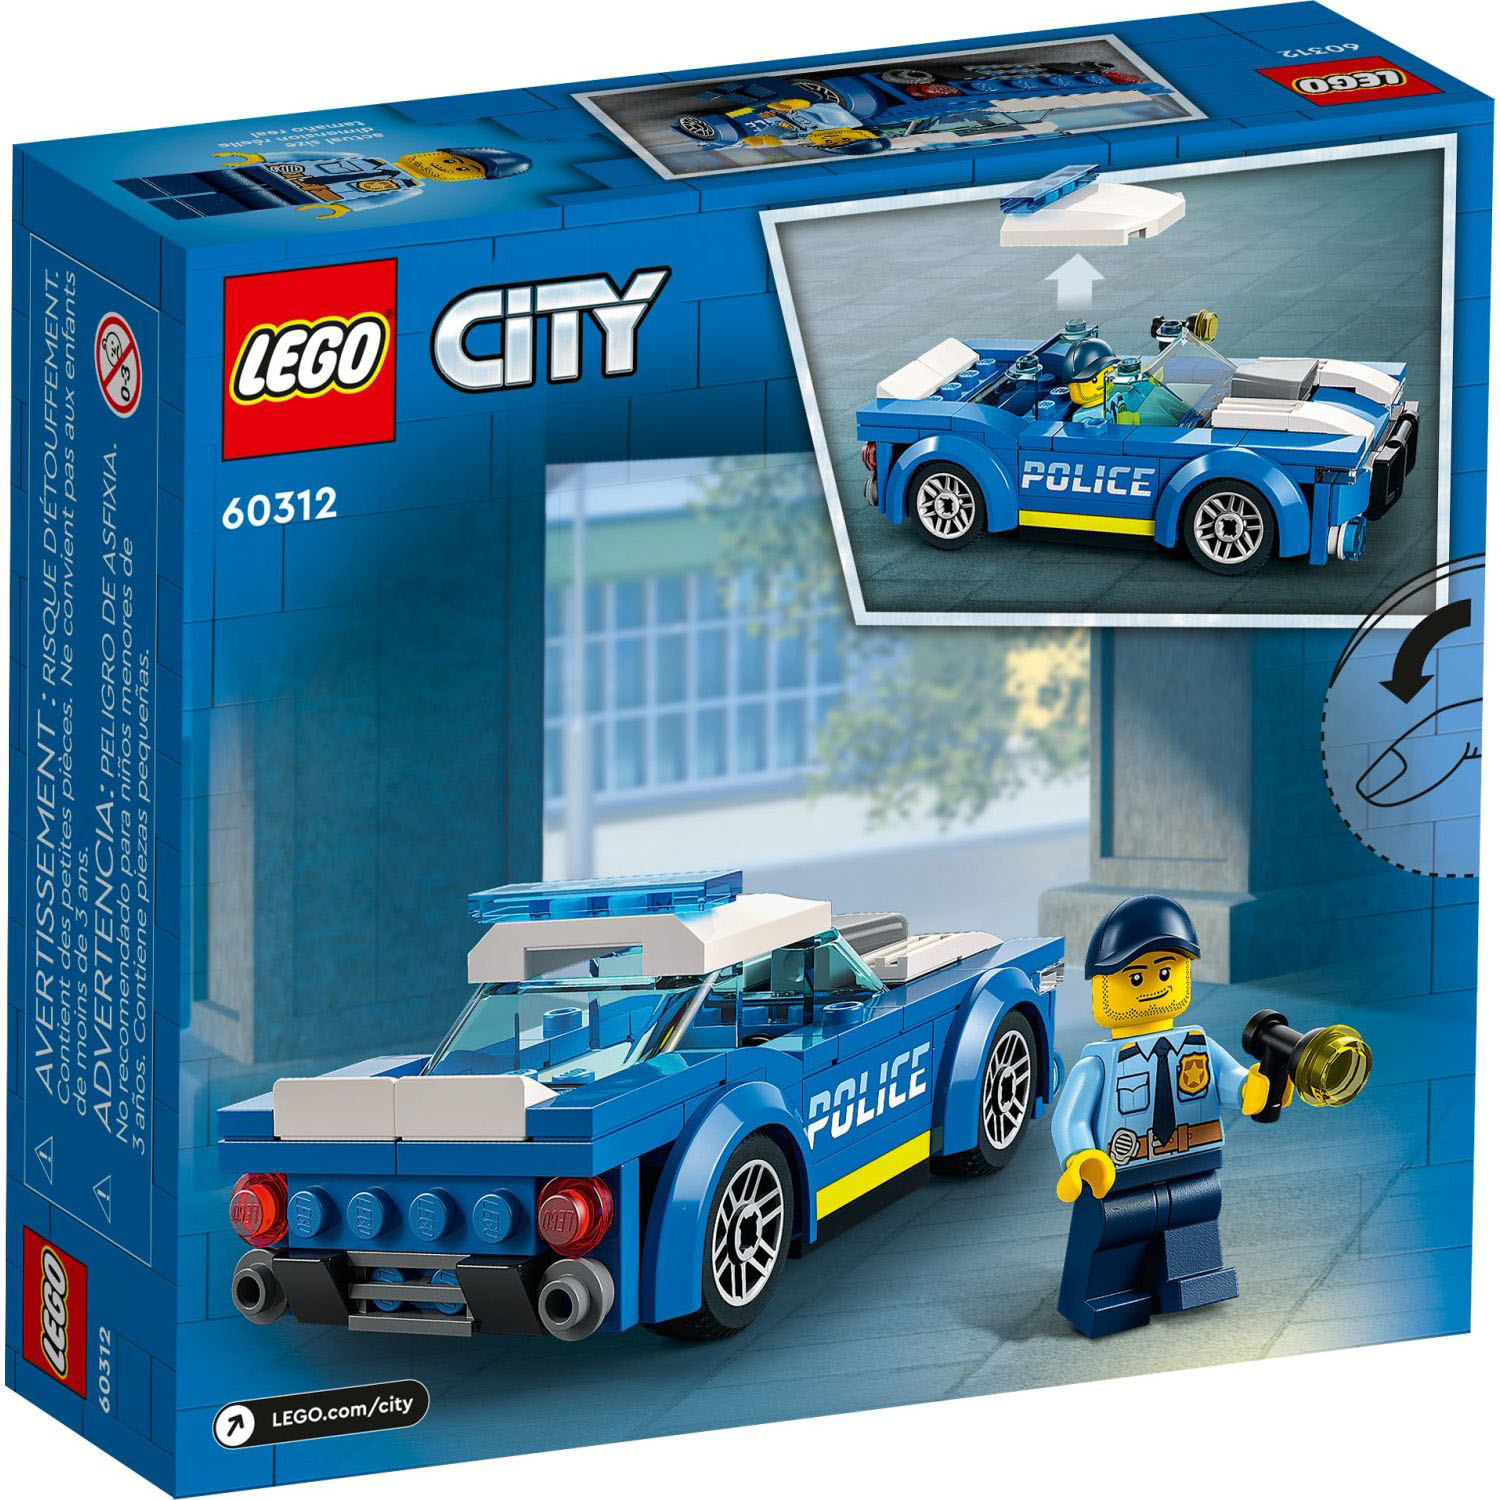 jord is Tilfredsstille LEGO City Police Car 60312 6379600 - Best Buy